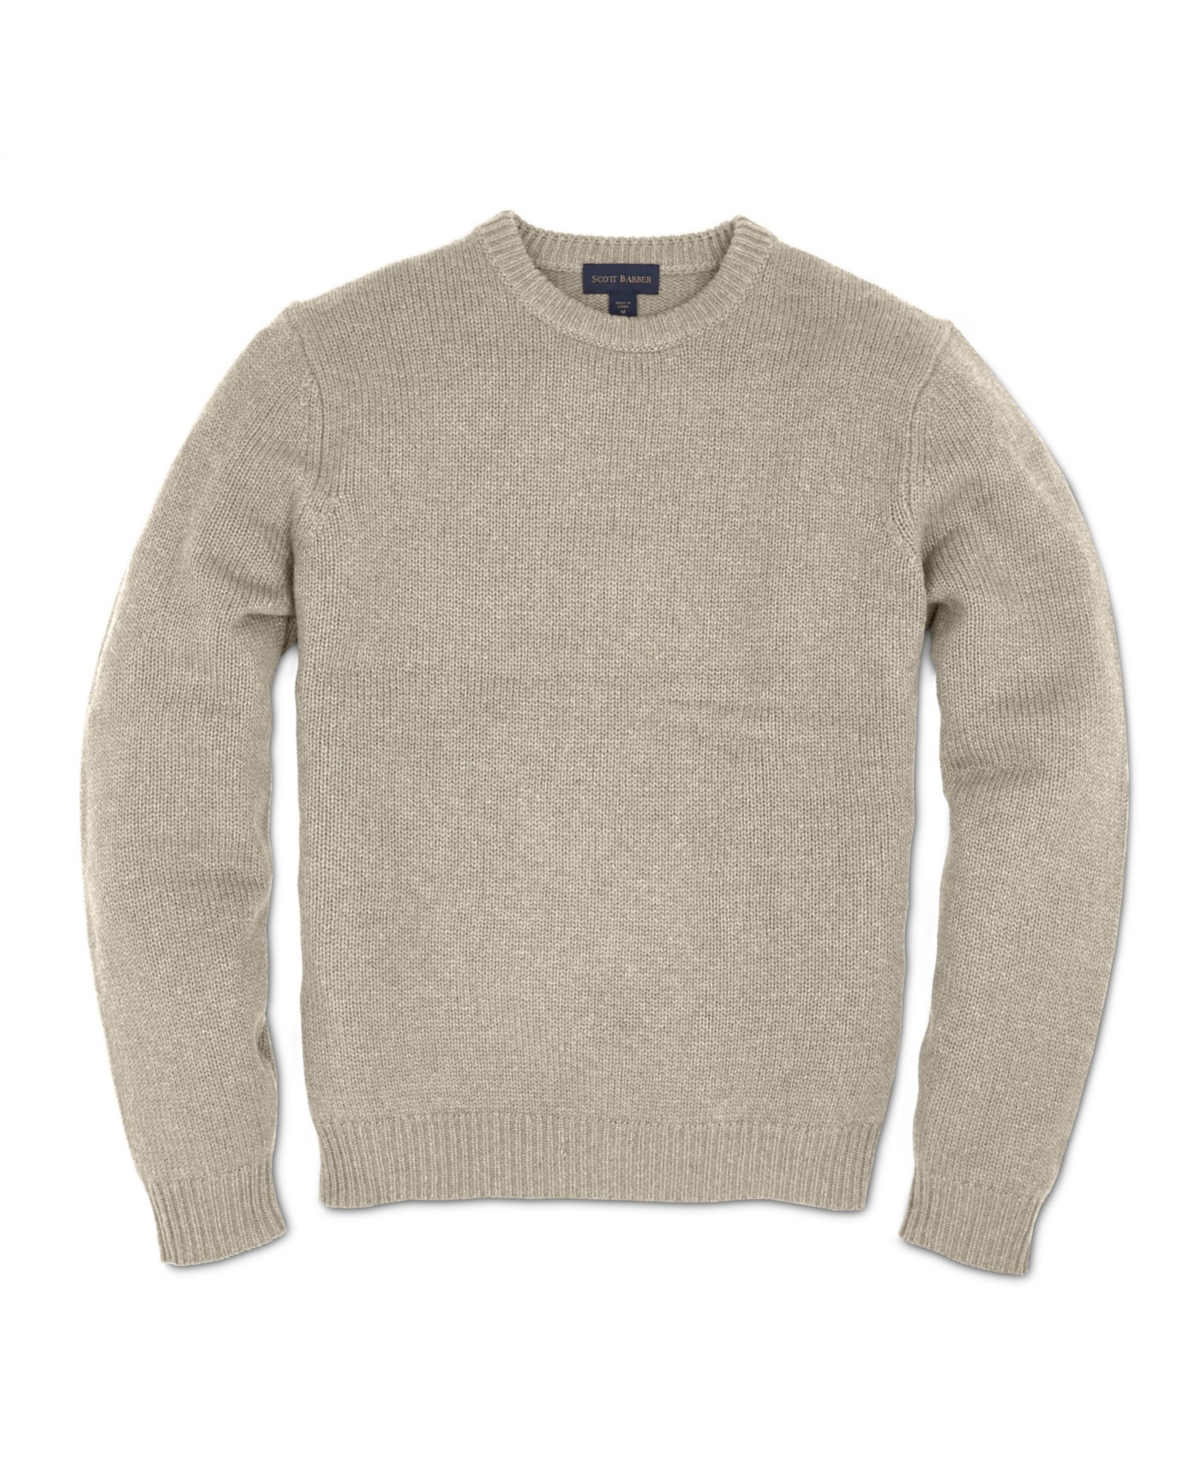 Men's Cashmere/Cotton Crew Sweaters - Tomato